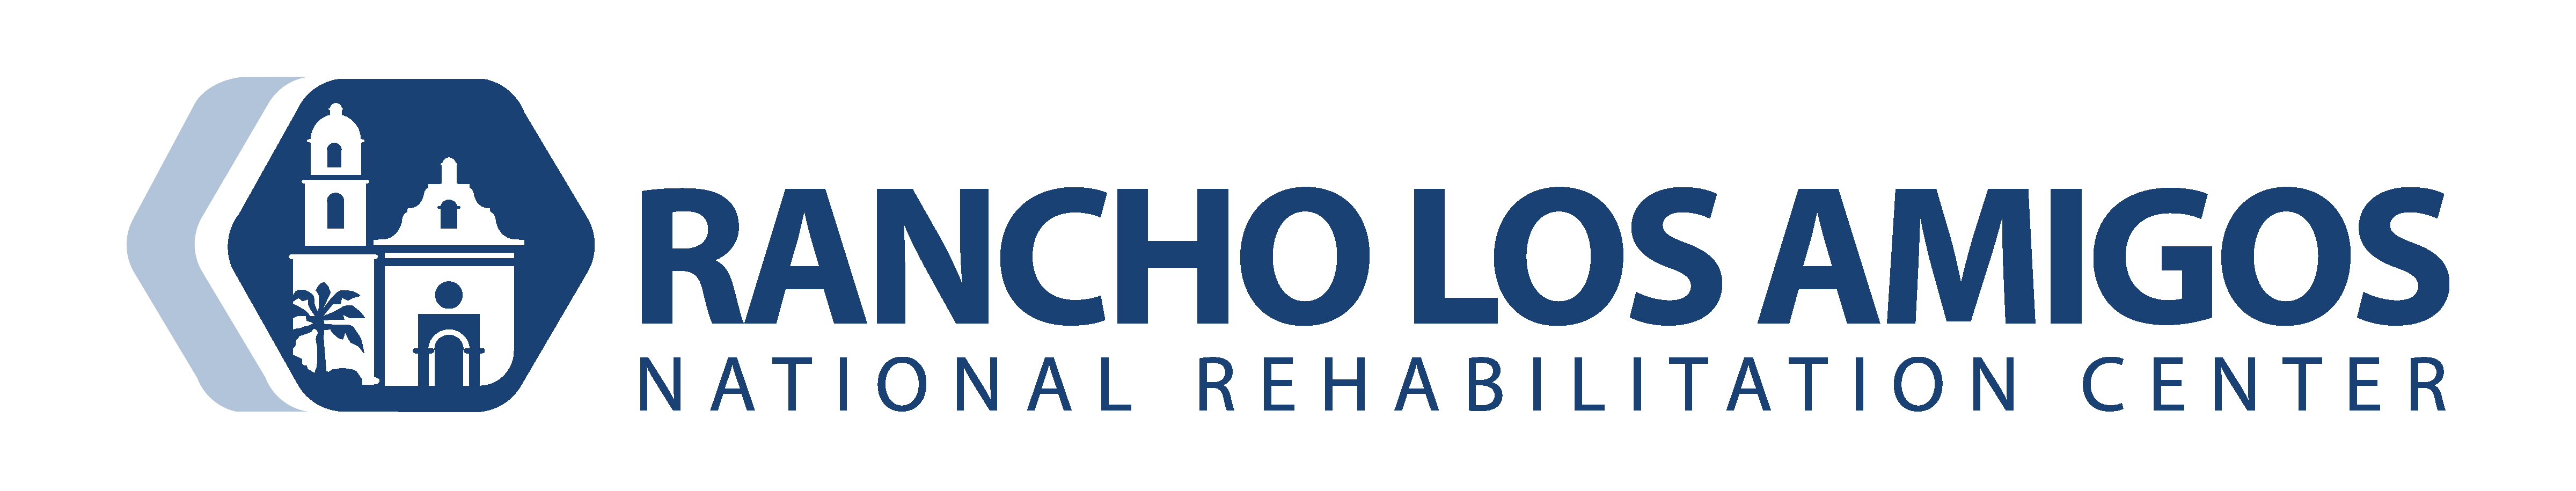 Centro Nacional de Rehabilitación Rancho Los Amigos